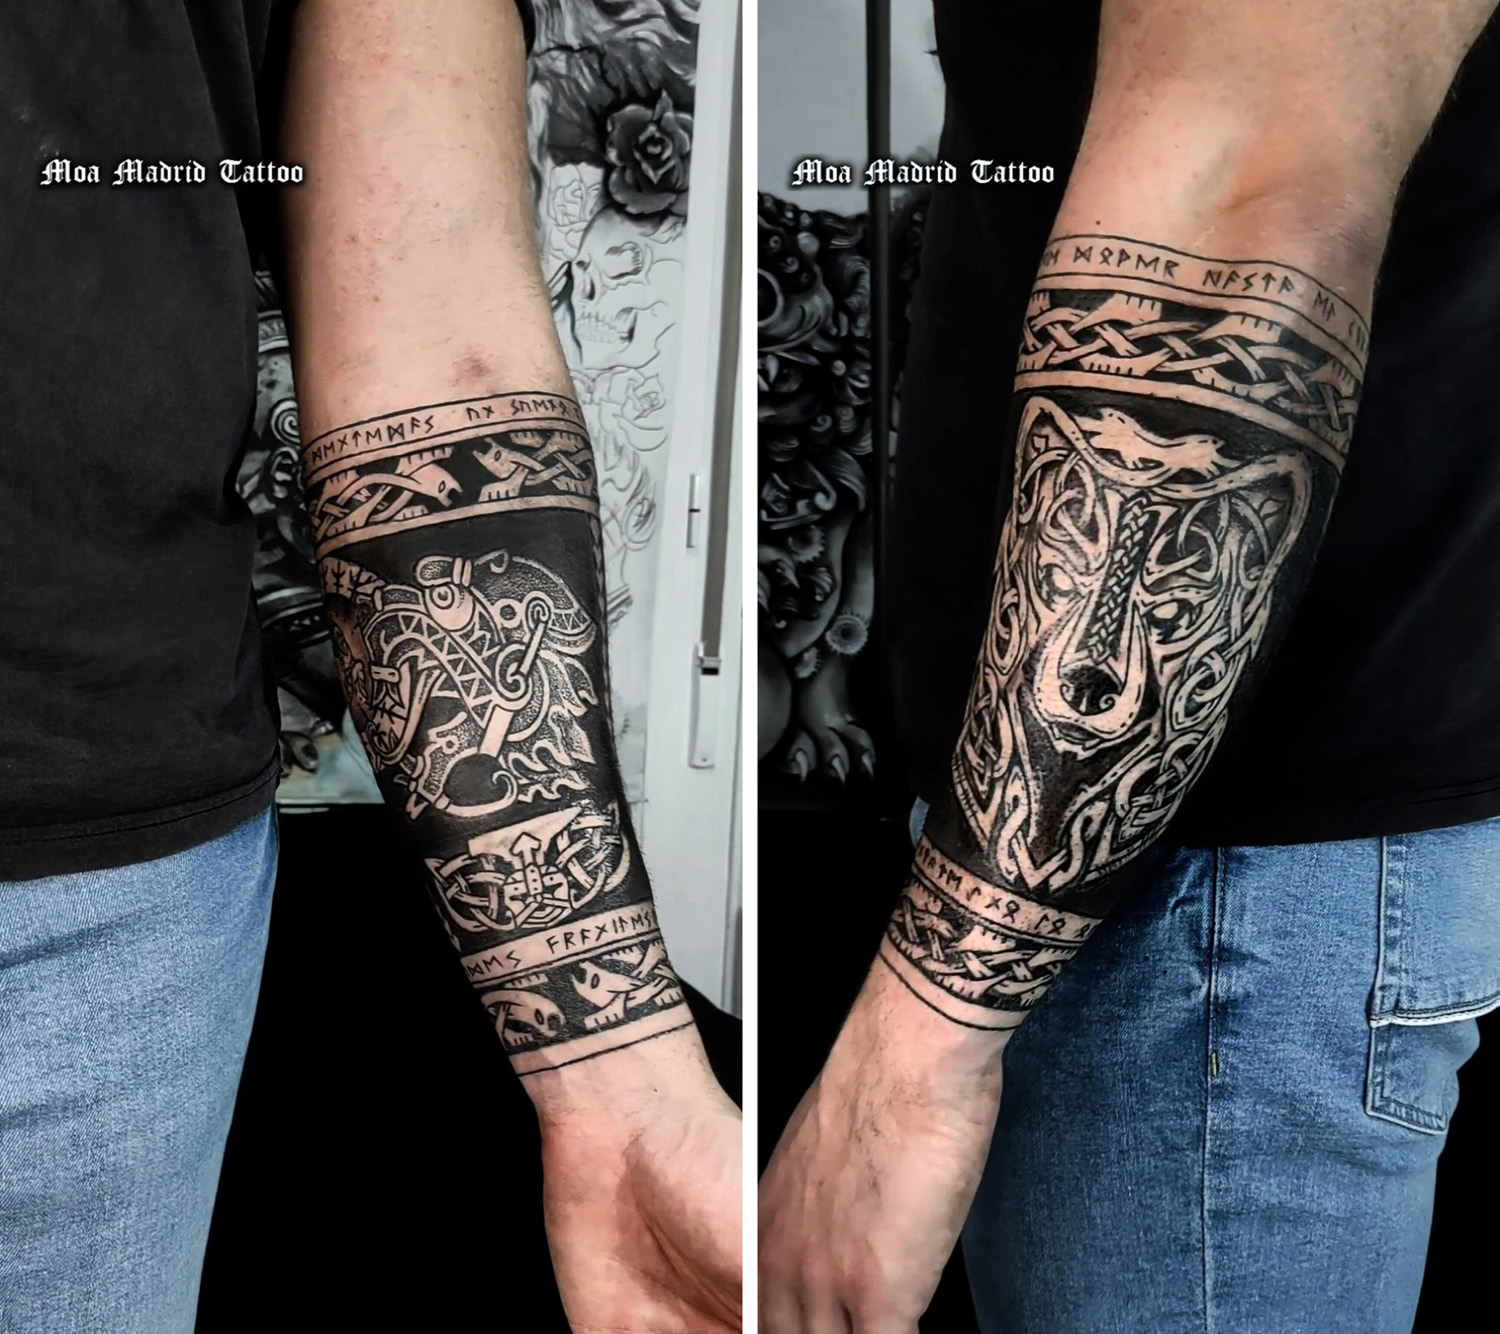 Diseño exclusivo con tatuajes de inspiración nórdica y vikinga rodeando el antebrazo